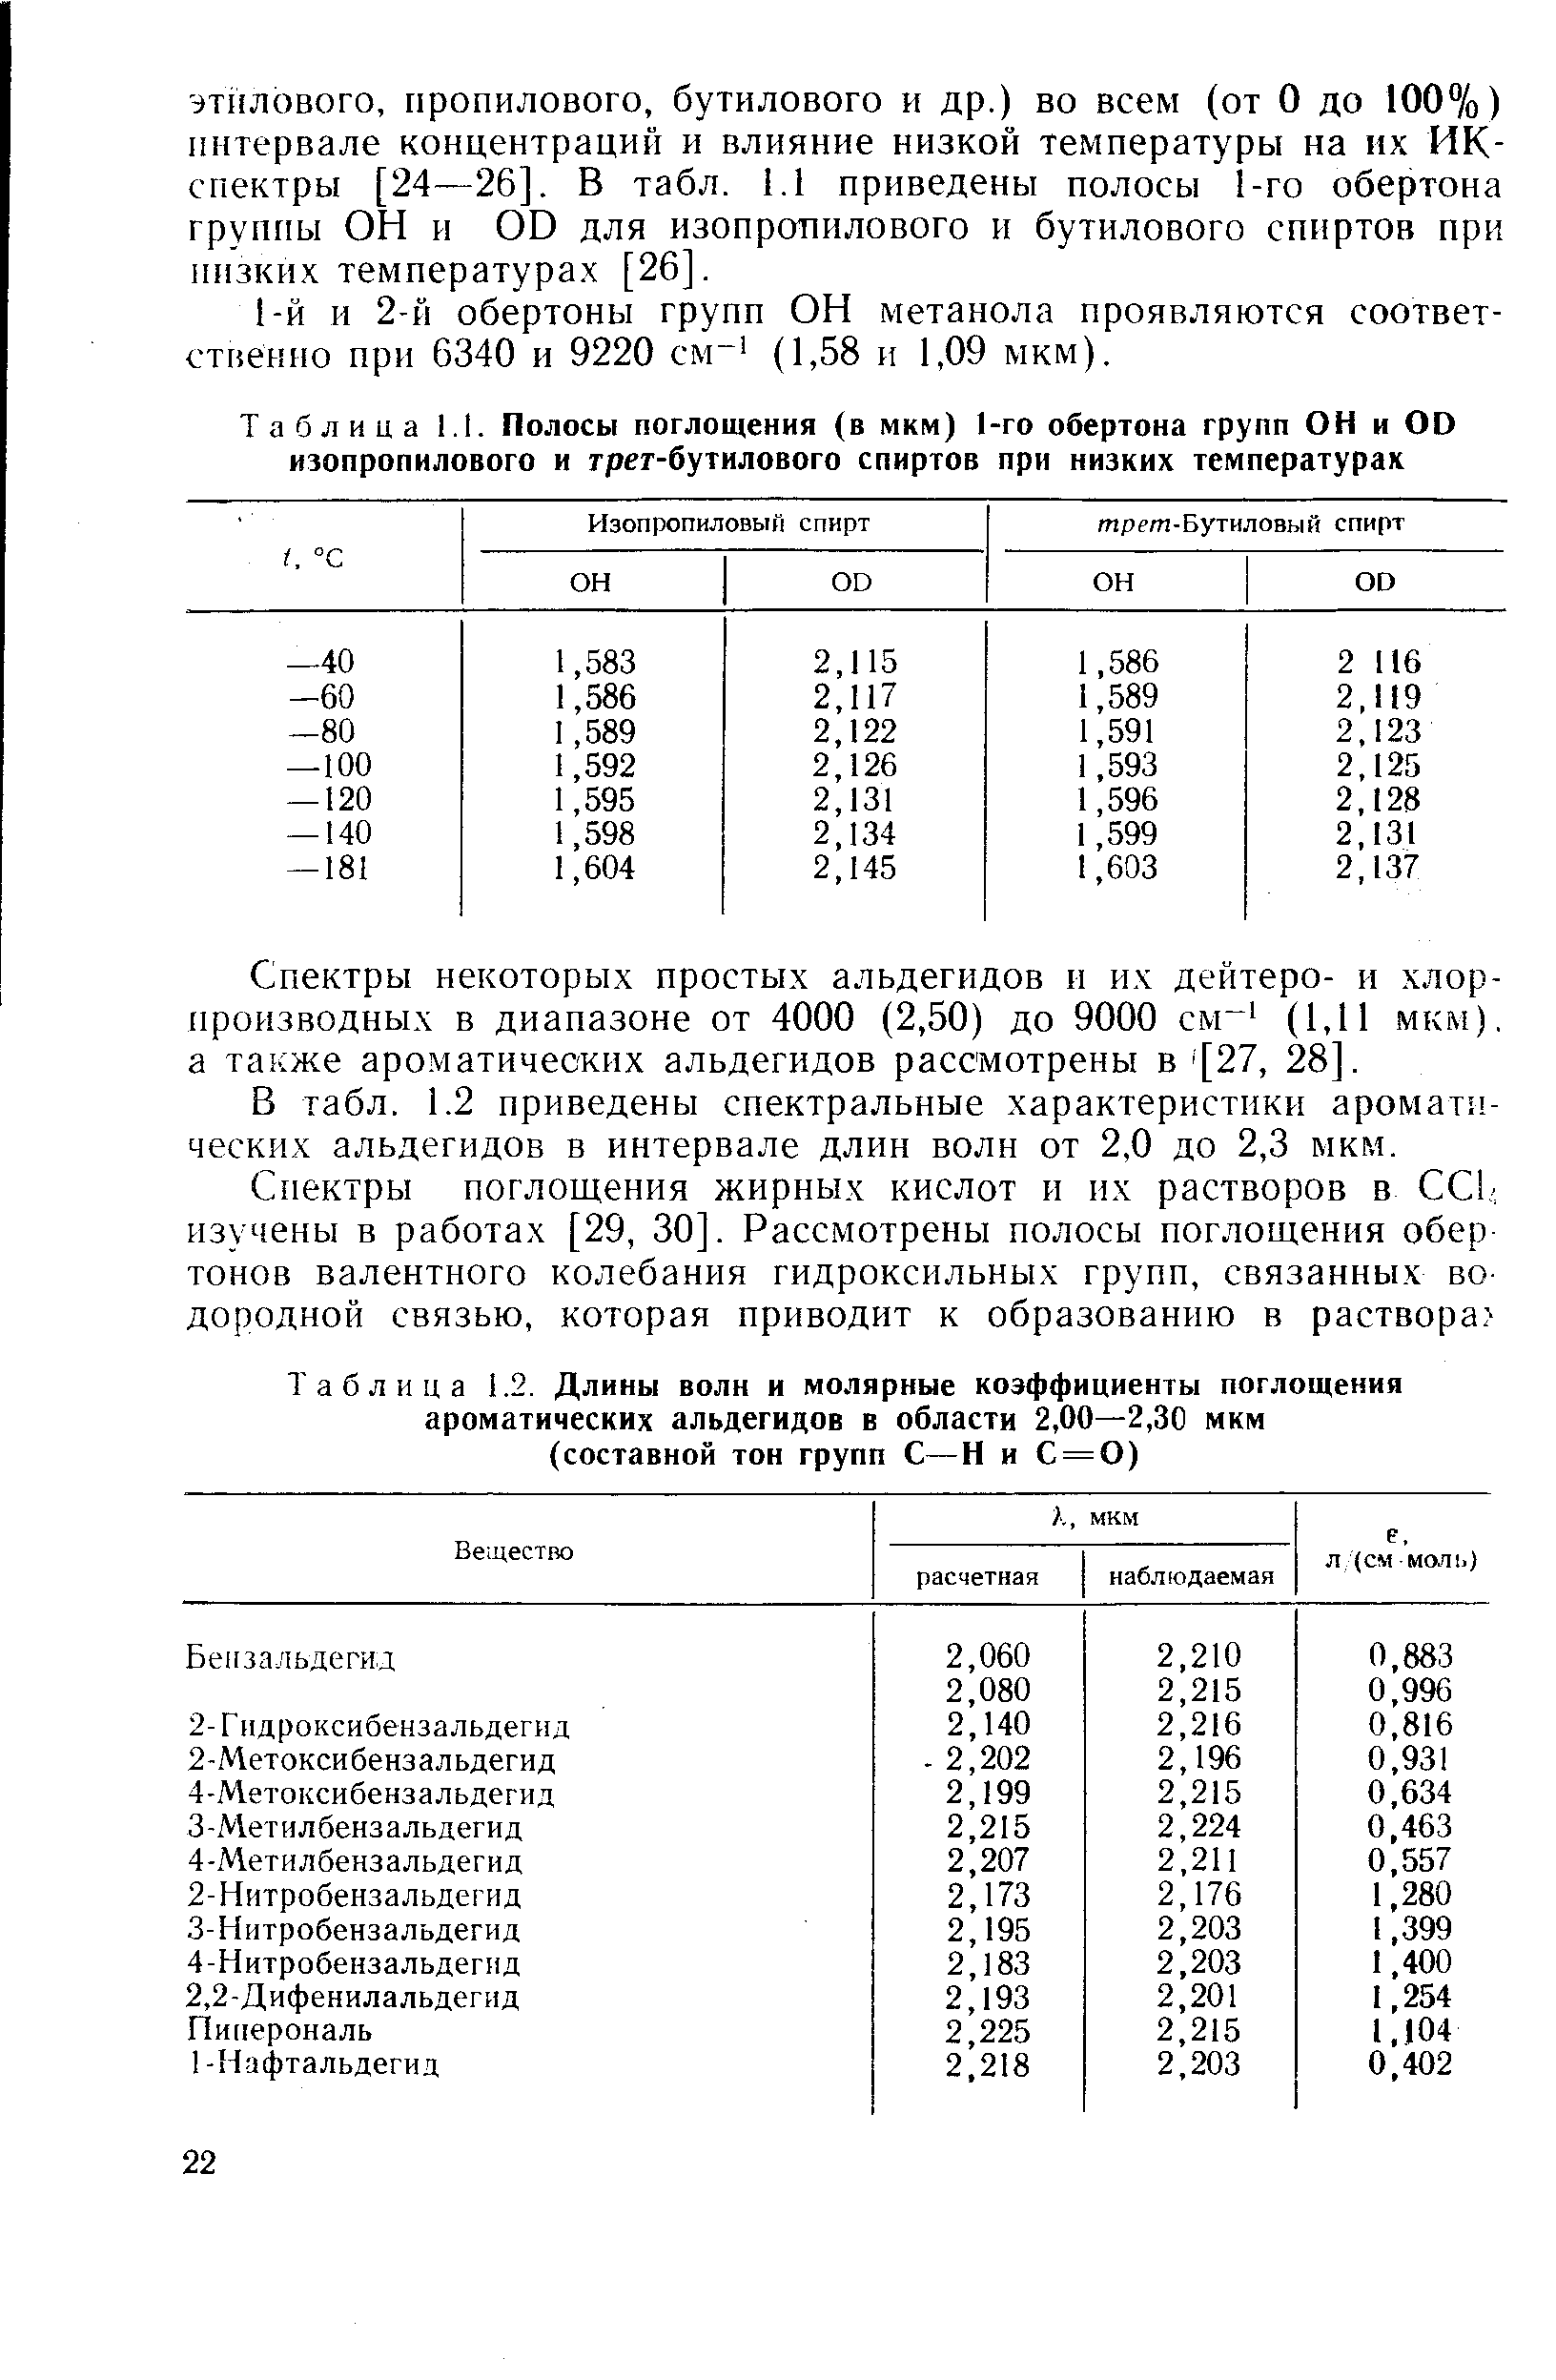 Спектры некоторых простых альдегидов и их дейтеро- и хлор-производных в диапазоне от 4000 (2,50) до 9000 см (1,11 мкм), а также ароматических альдегидов рассмотрены в [27, 28].